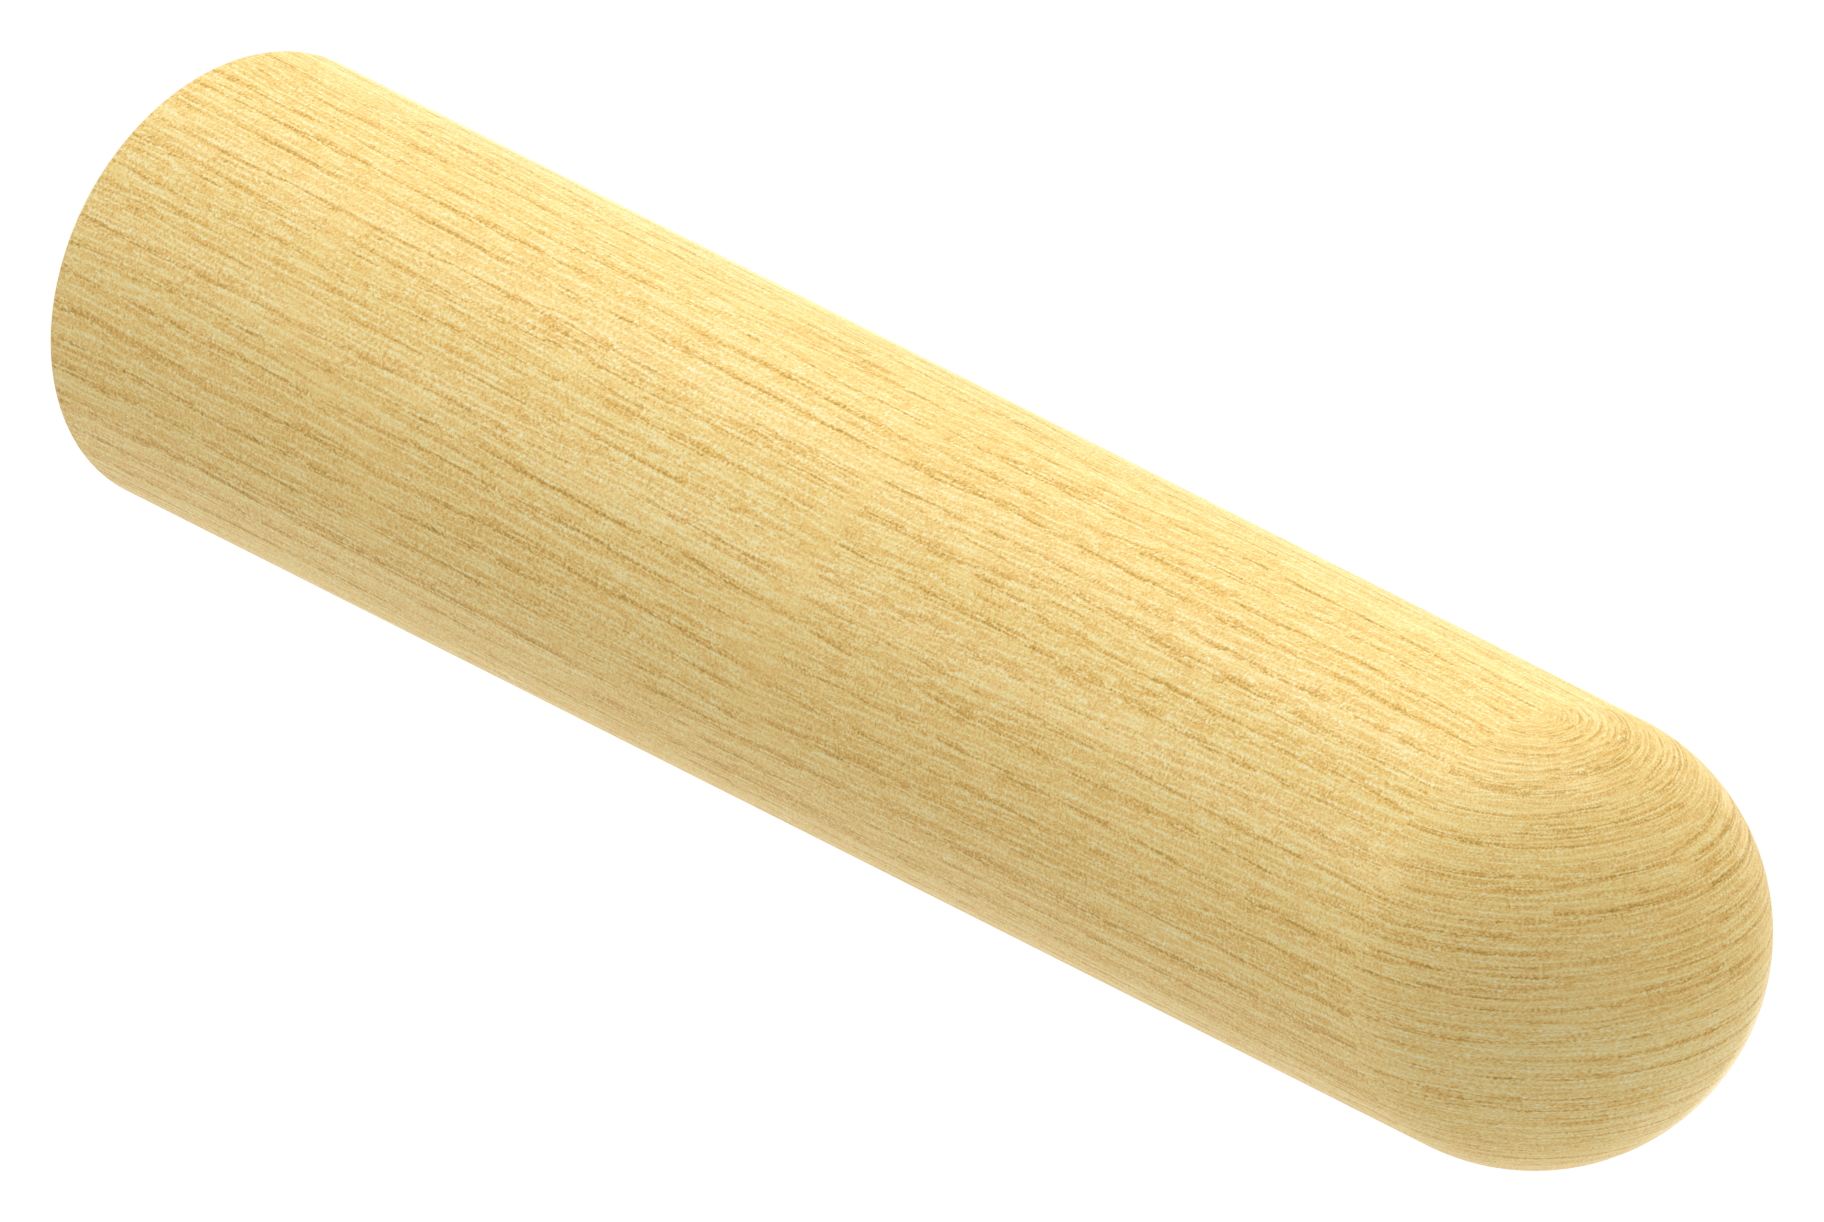 Holzhandlauf Ahorn Ø 42mm, Länge 200mm, lackiert